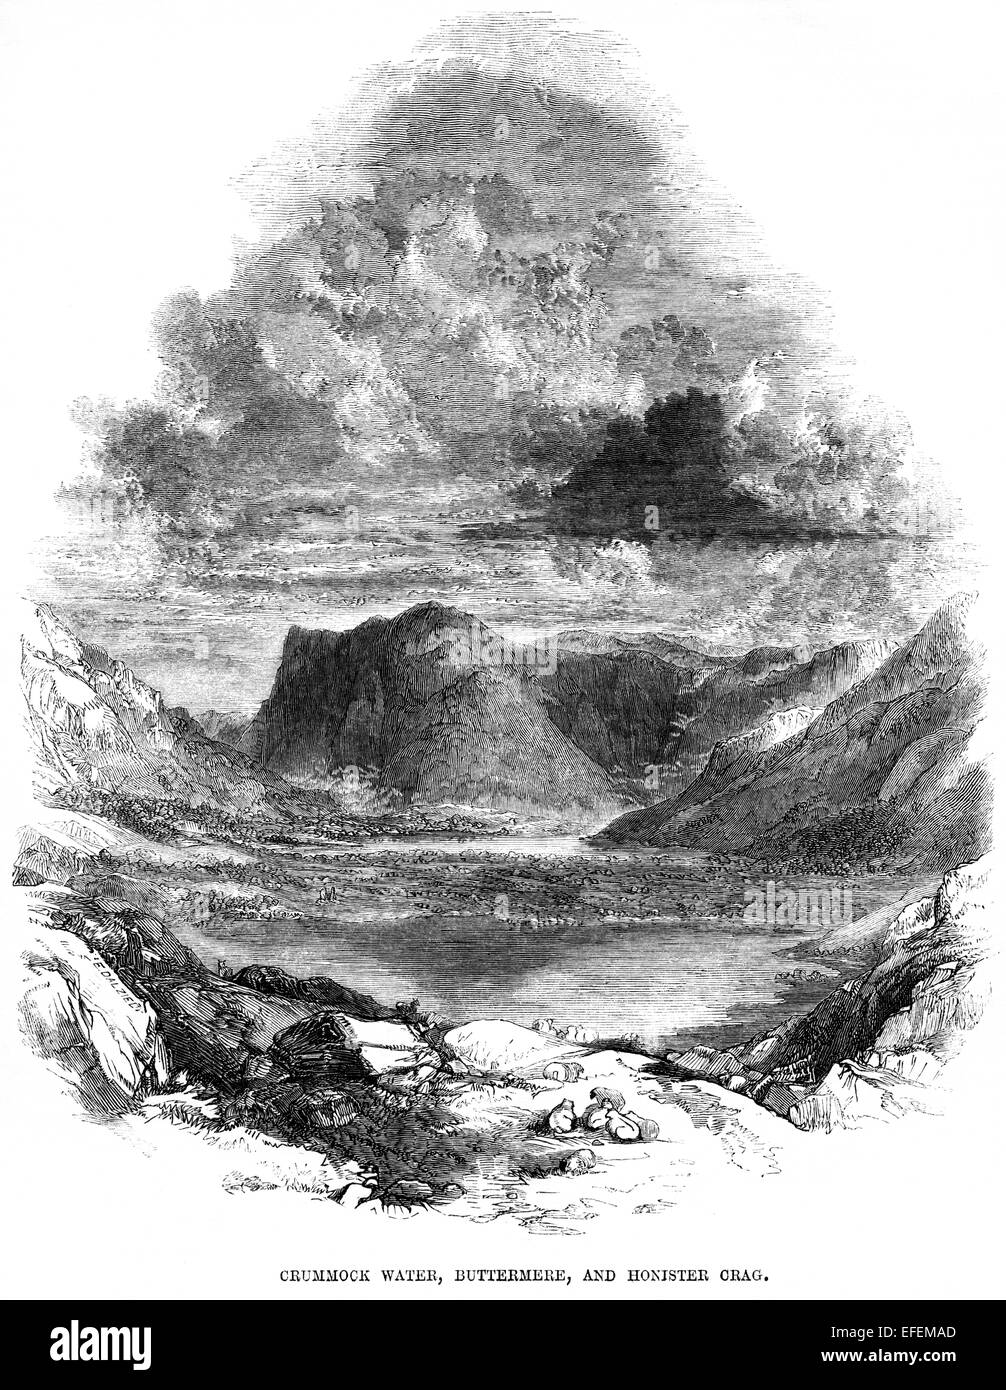 Eine Gravur von Crummock Water, Buttermere und Honister Crag, die in hoher Auflösung von einem Buch aus dem Jahr 1850 gescannt wurde. Für urheberrechtlich frei gehalten. Stockfoto